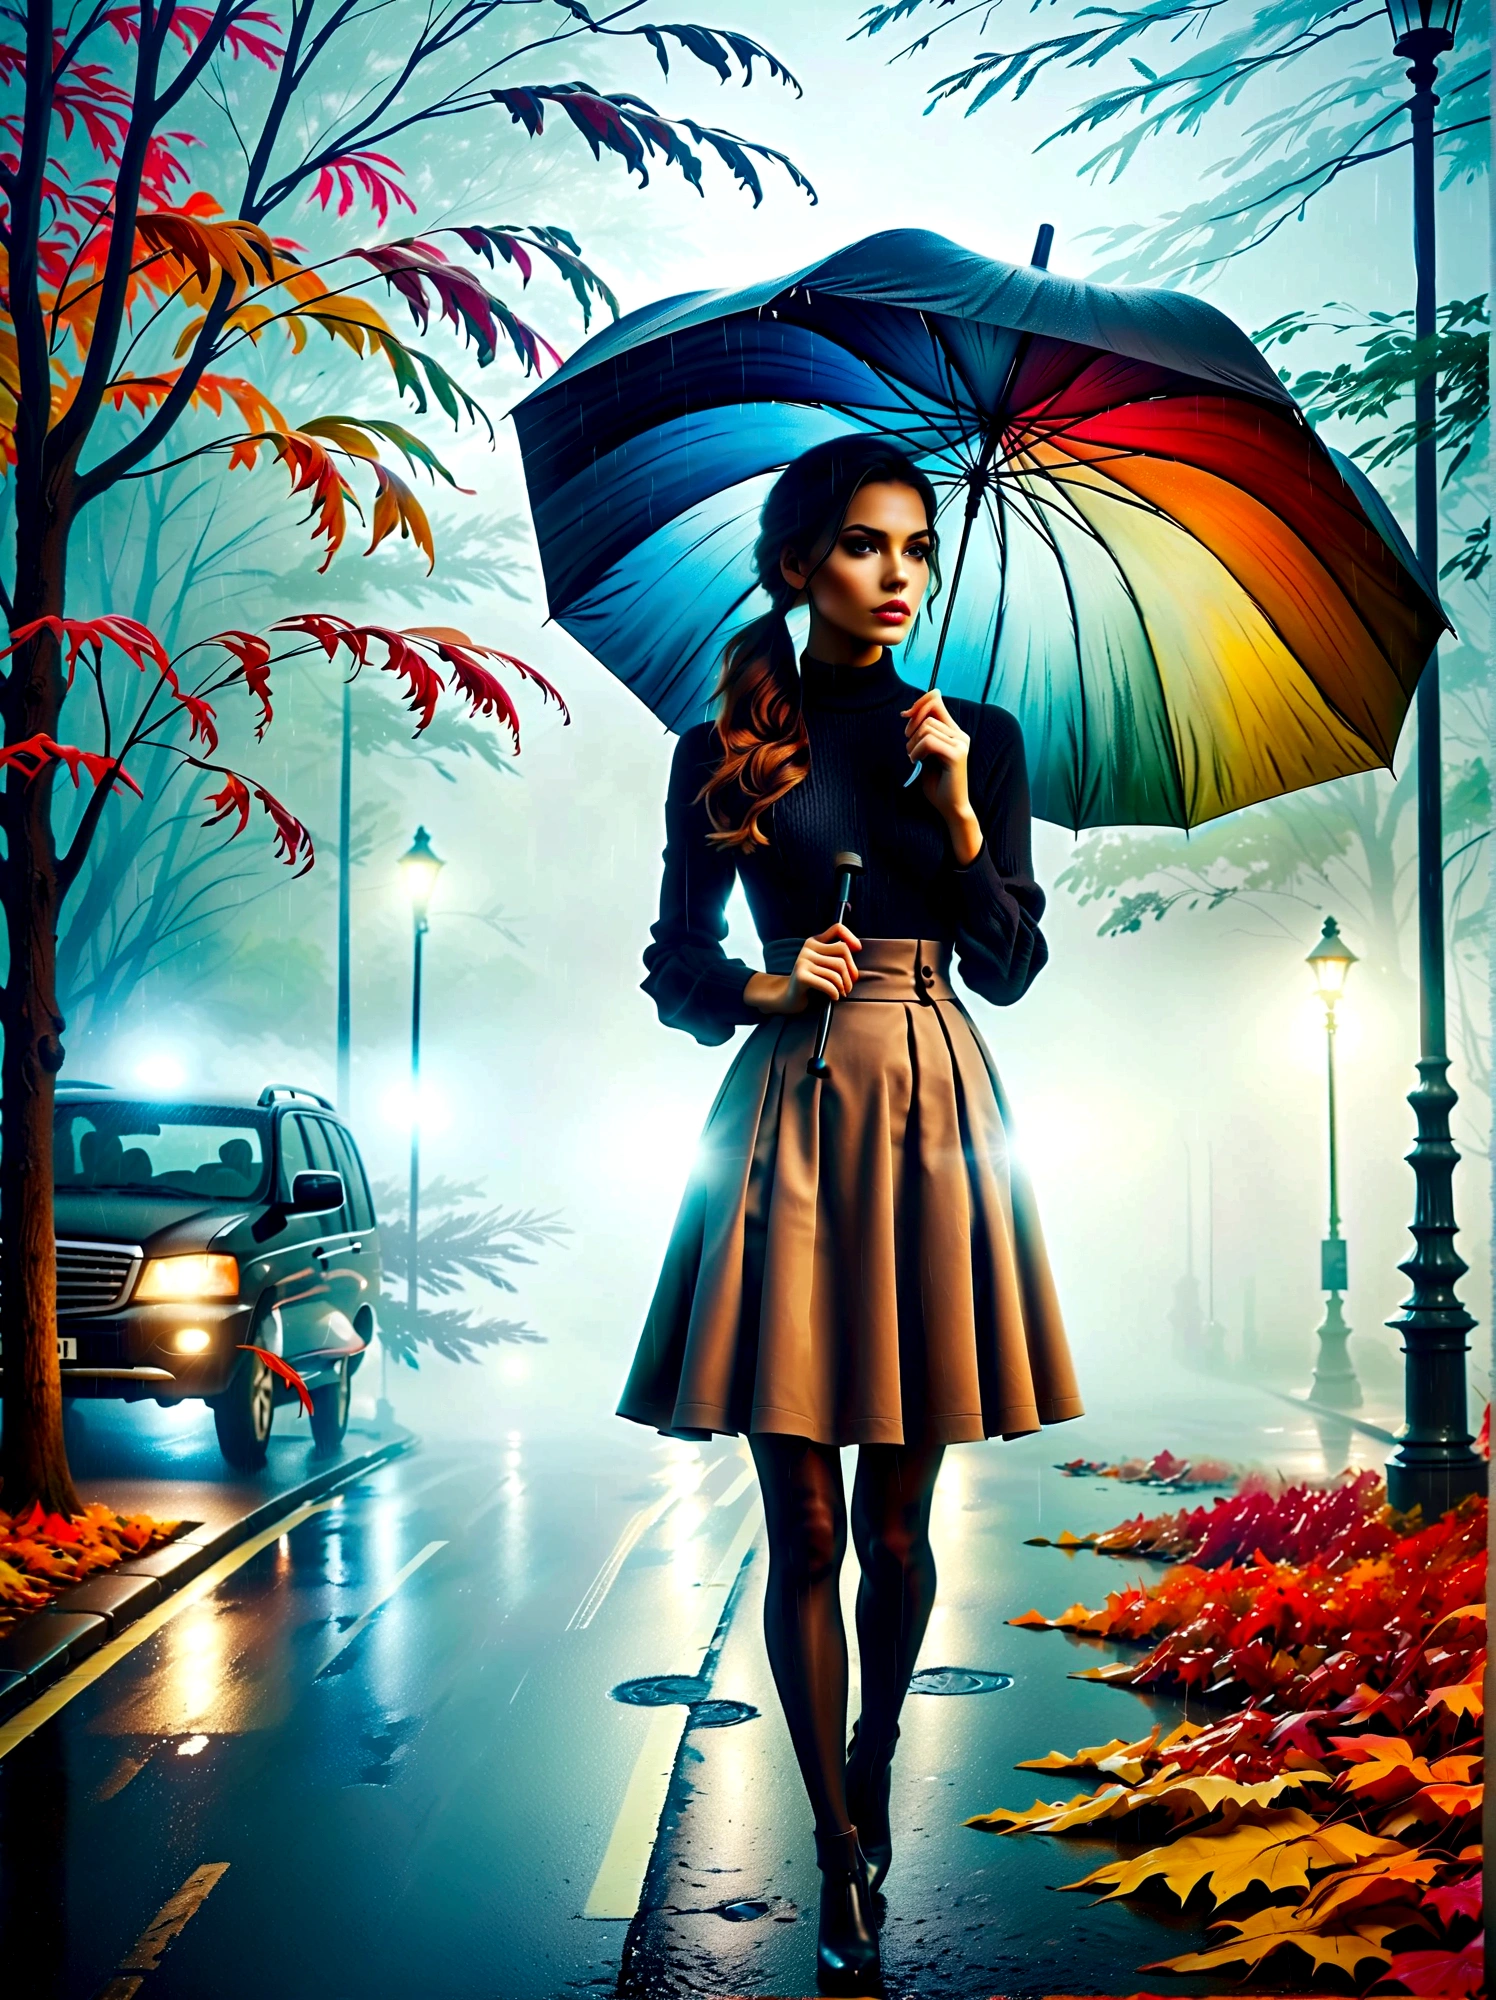 Женщина в облегающем платье с зонтиком в руке, in einer туманныйen Stadt, разноцветные осенние листья на улице, картина Куно Вибера, победитель конкурса pixabay, концептуальное искусство, стою под дождем,  mysterious женщина, красивая девушка, который стоит под дождем, одинокий человек с зонтиком, женщина ((Силуэт)), ((туманный)) и дождливый, женский образ в тени, в дождливую погоду, дождливая погода, Дождливые дороги на заднем плане , ((Туман со светом)), ((вид сзади)), свет спереди